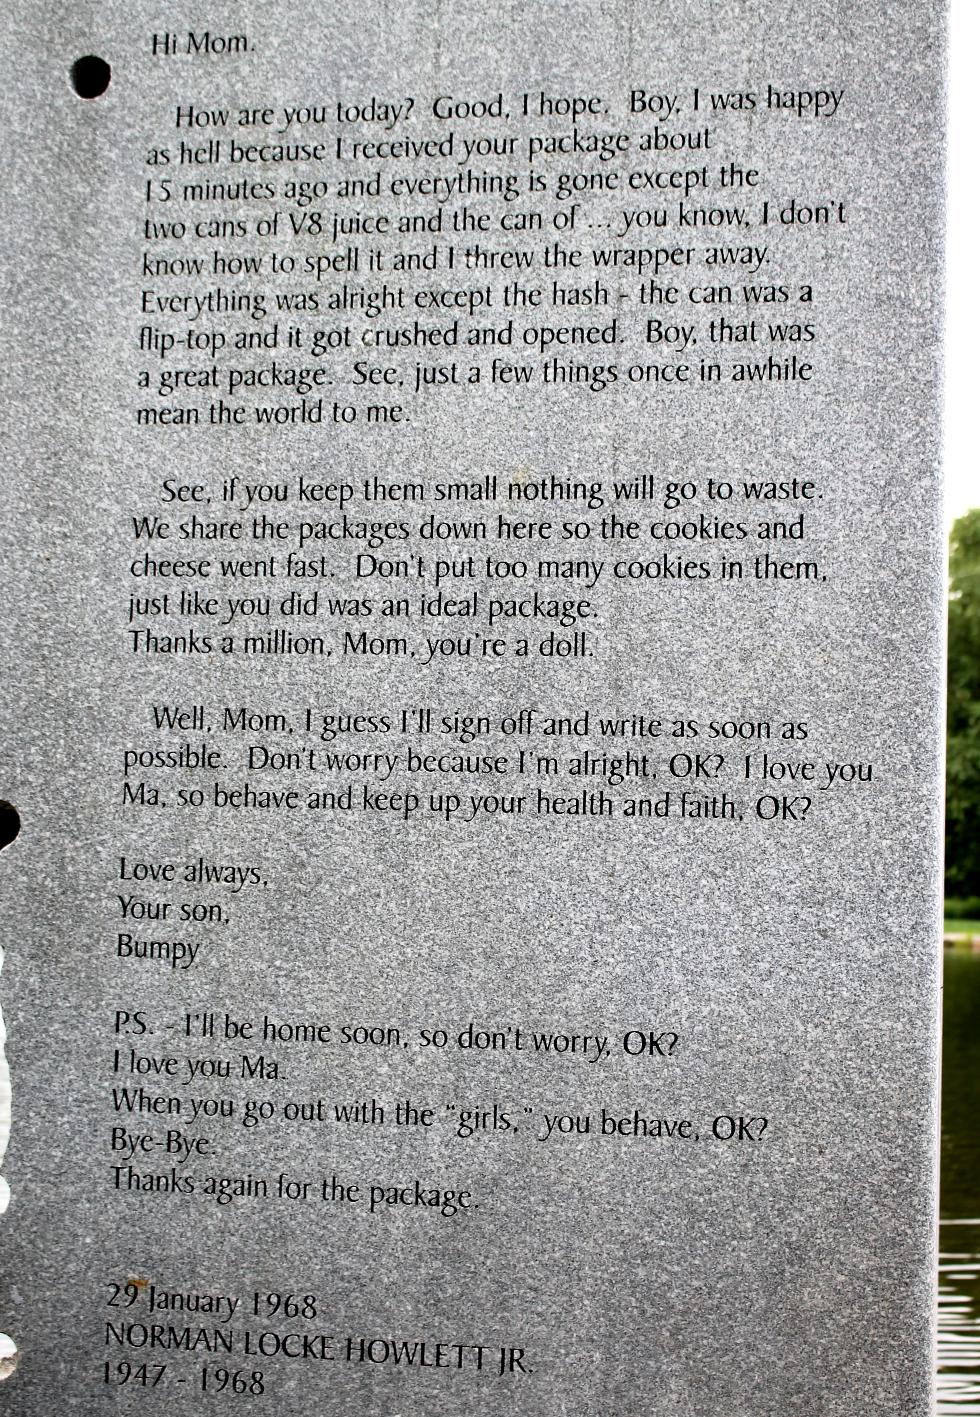 Massachusetts Vietnam Veterans Memorial - Worcester Massachusetts - Letter From Norman Locke Howlett Jr